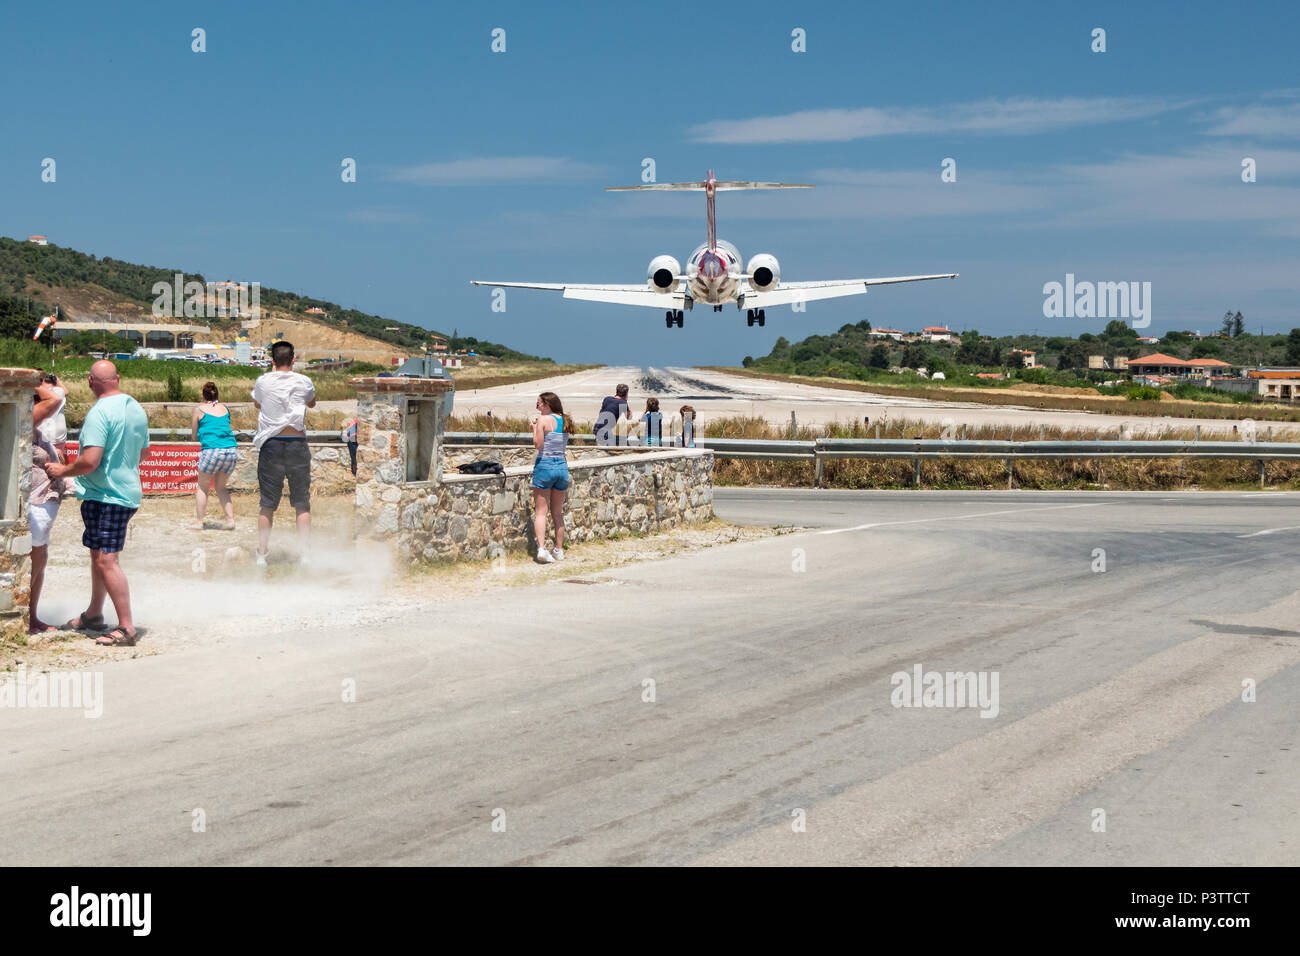 Avion du passager à l'atterrissage sur l'île de Skiathos en Grèce. Banque D'Images